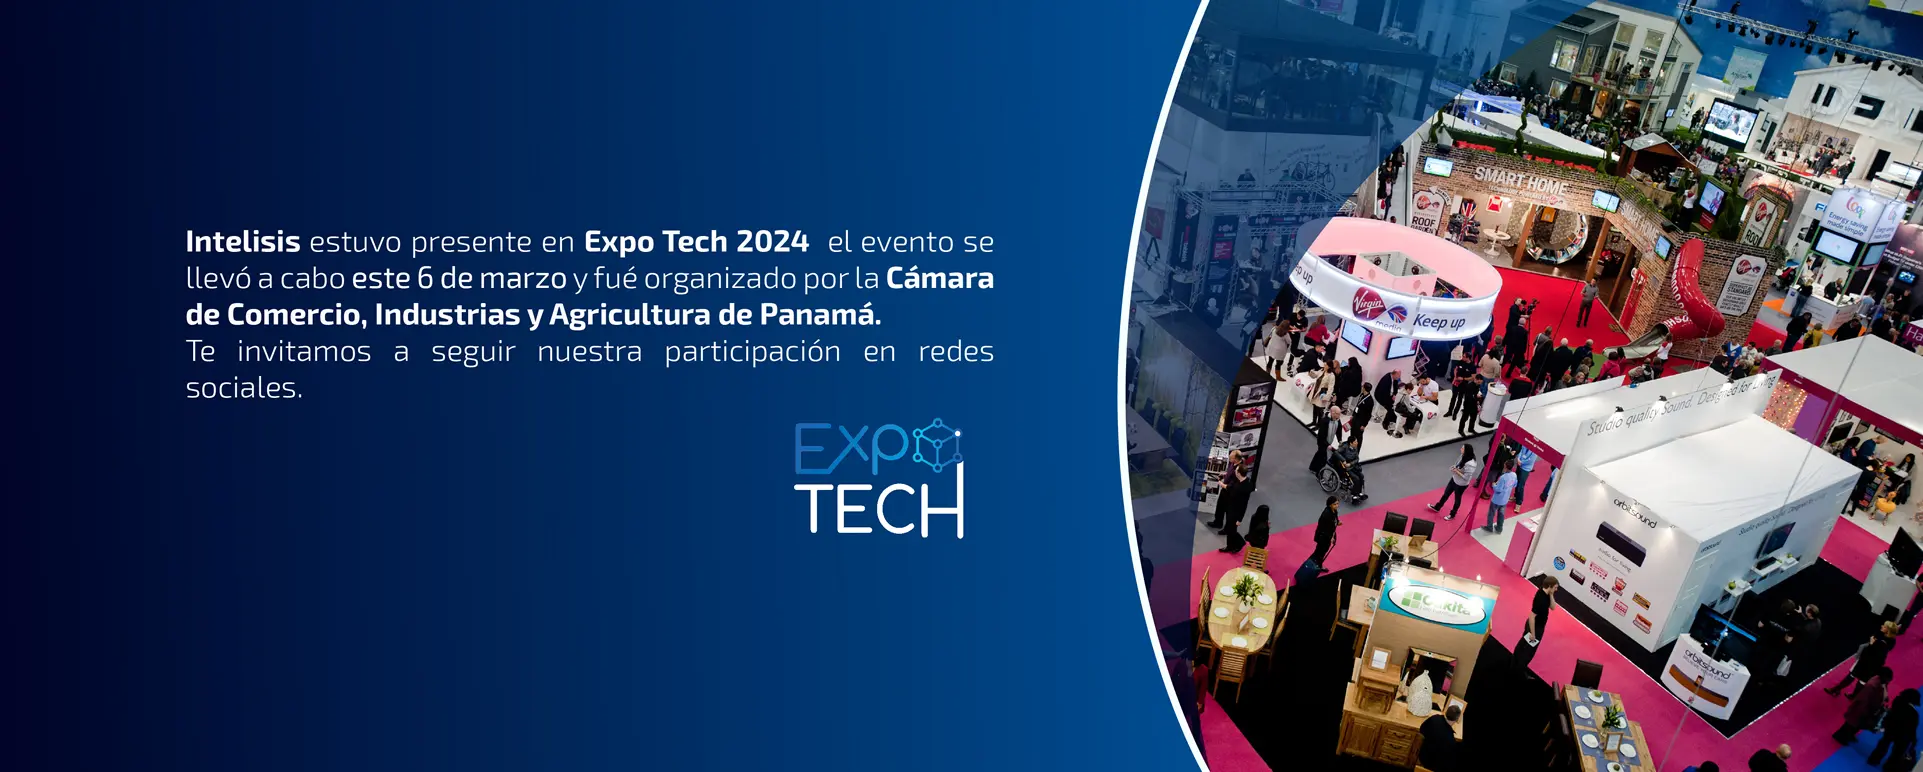 Intelisis se presentará en Expo Tech 2024 en Ciudad de Panamá.